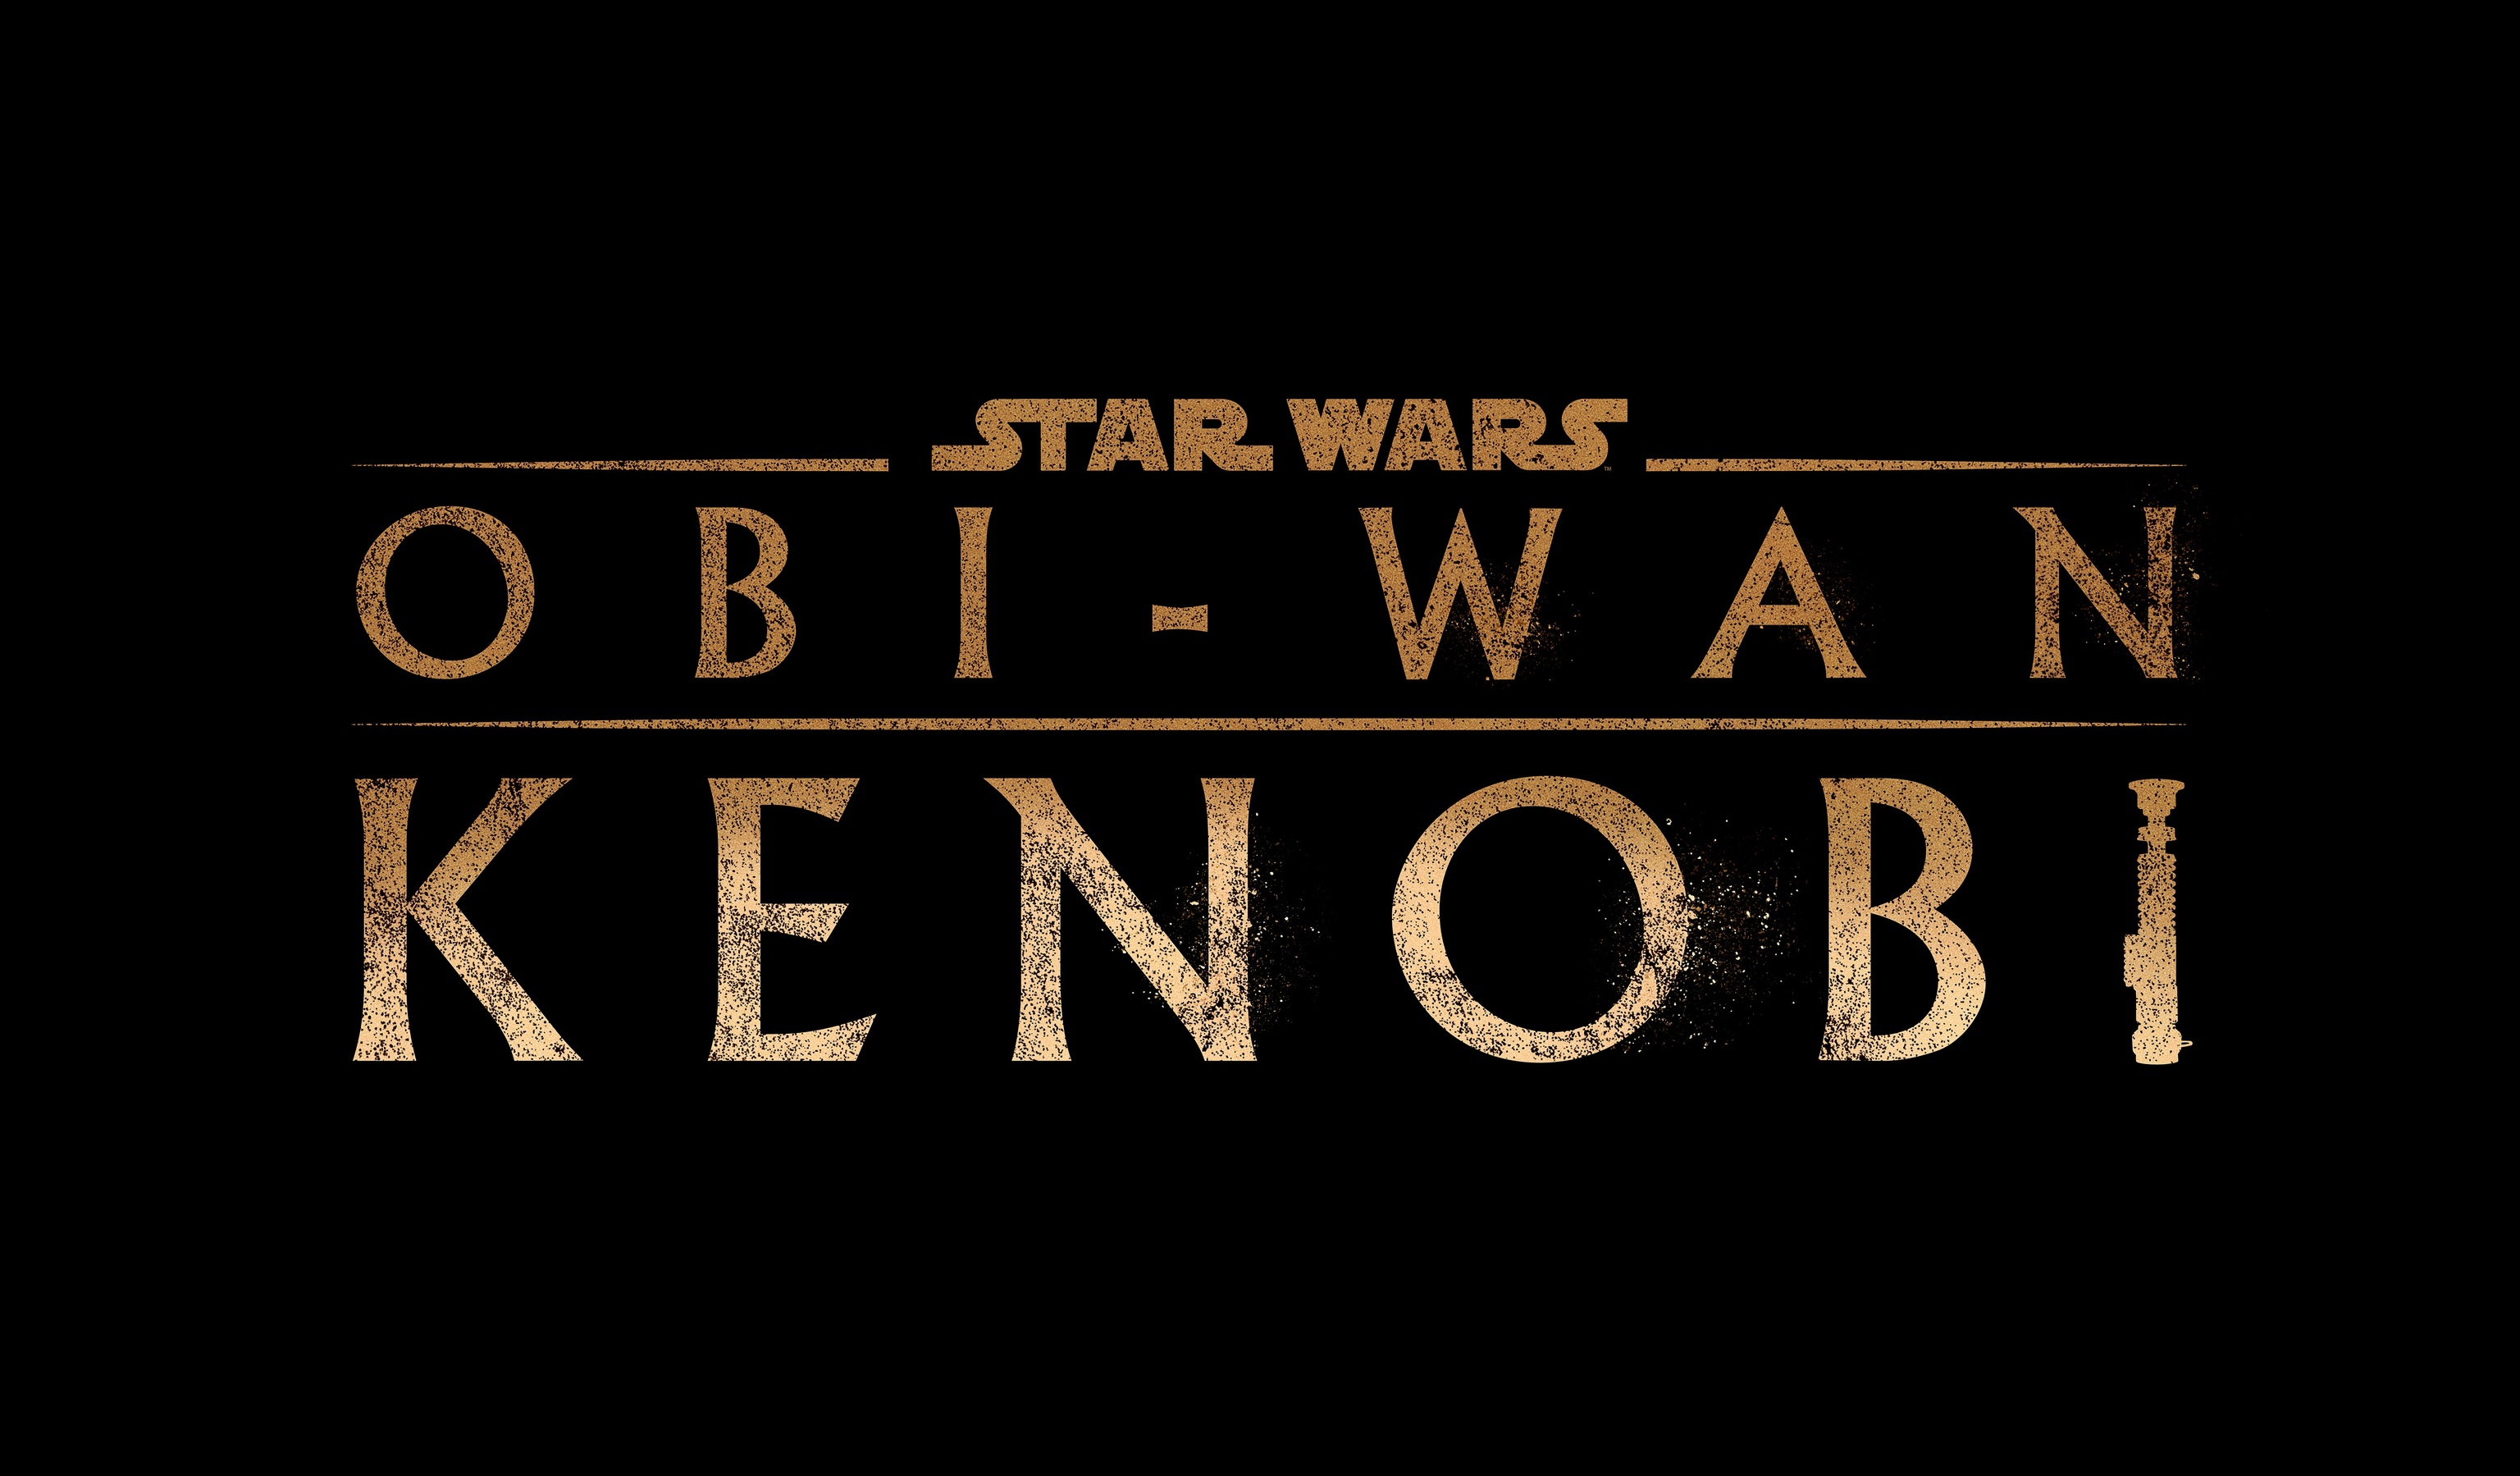 'Obi-Wan Kenobi' promotional logo.